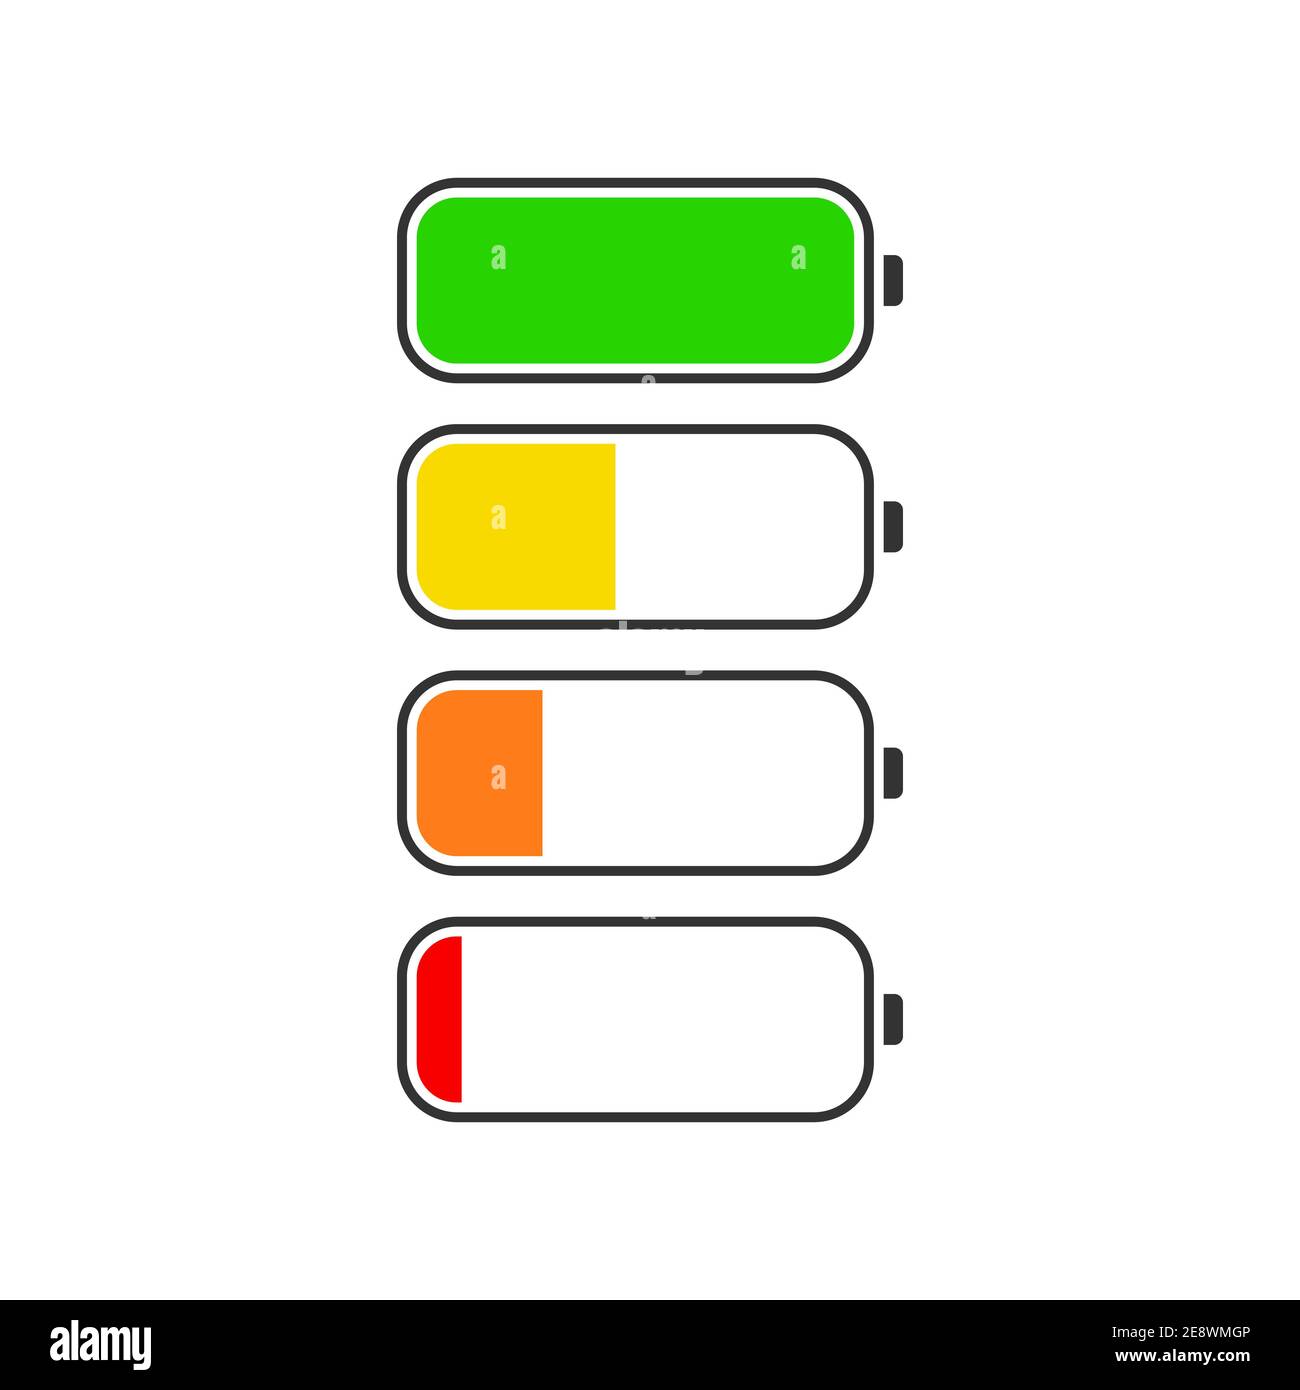 Qué significa que el icono de la batería del iPhone se ponga amarillo?